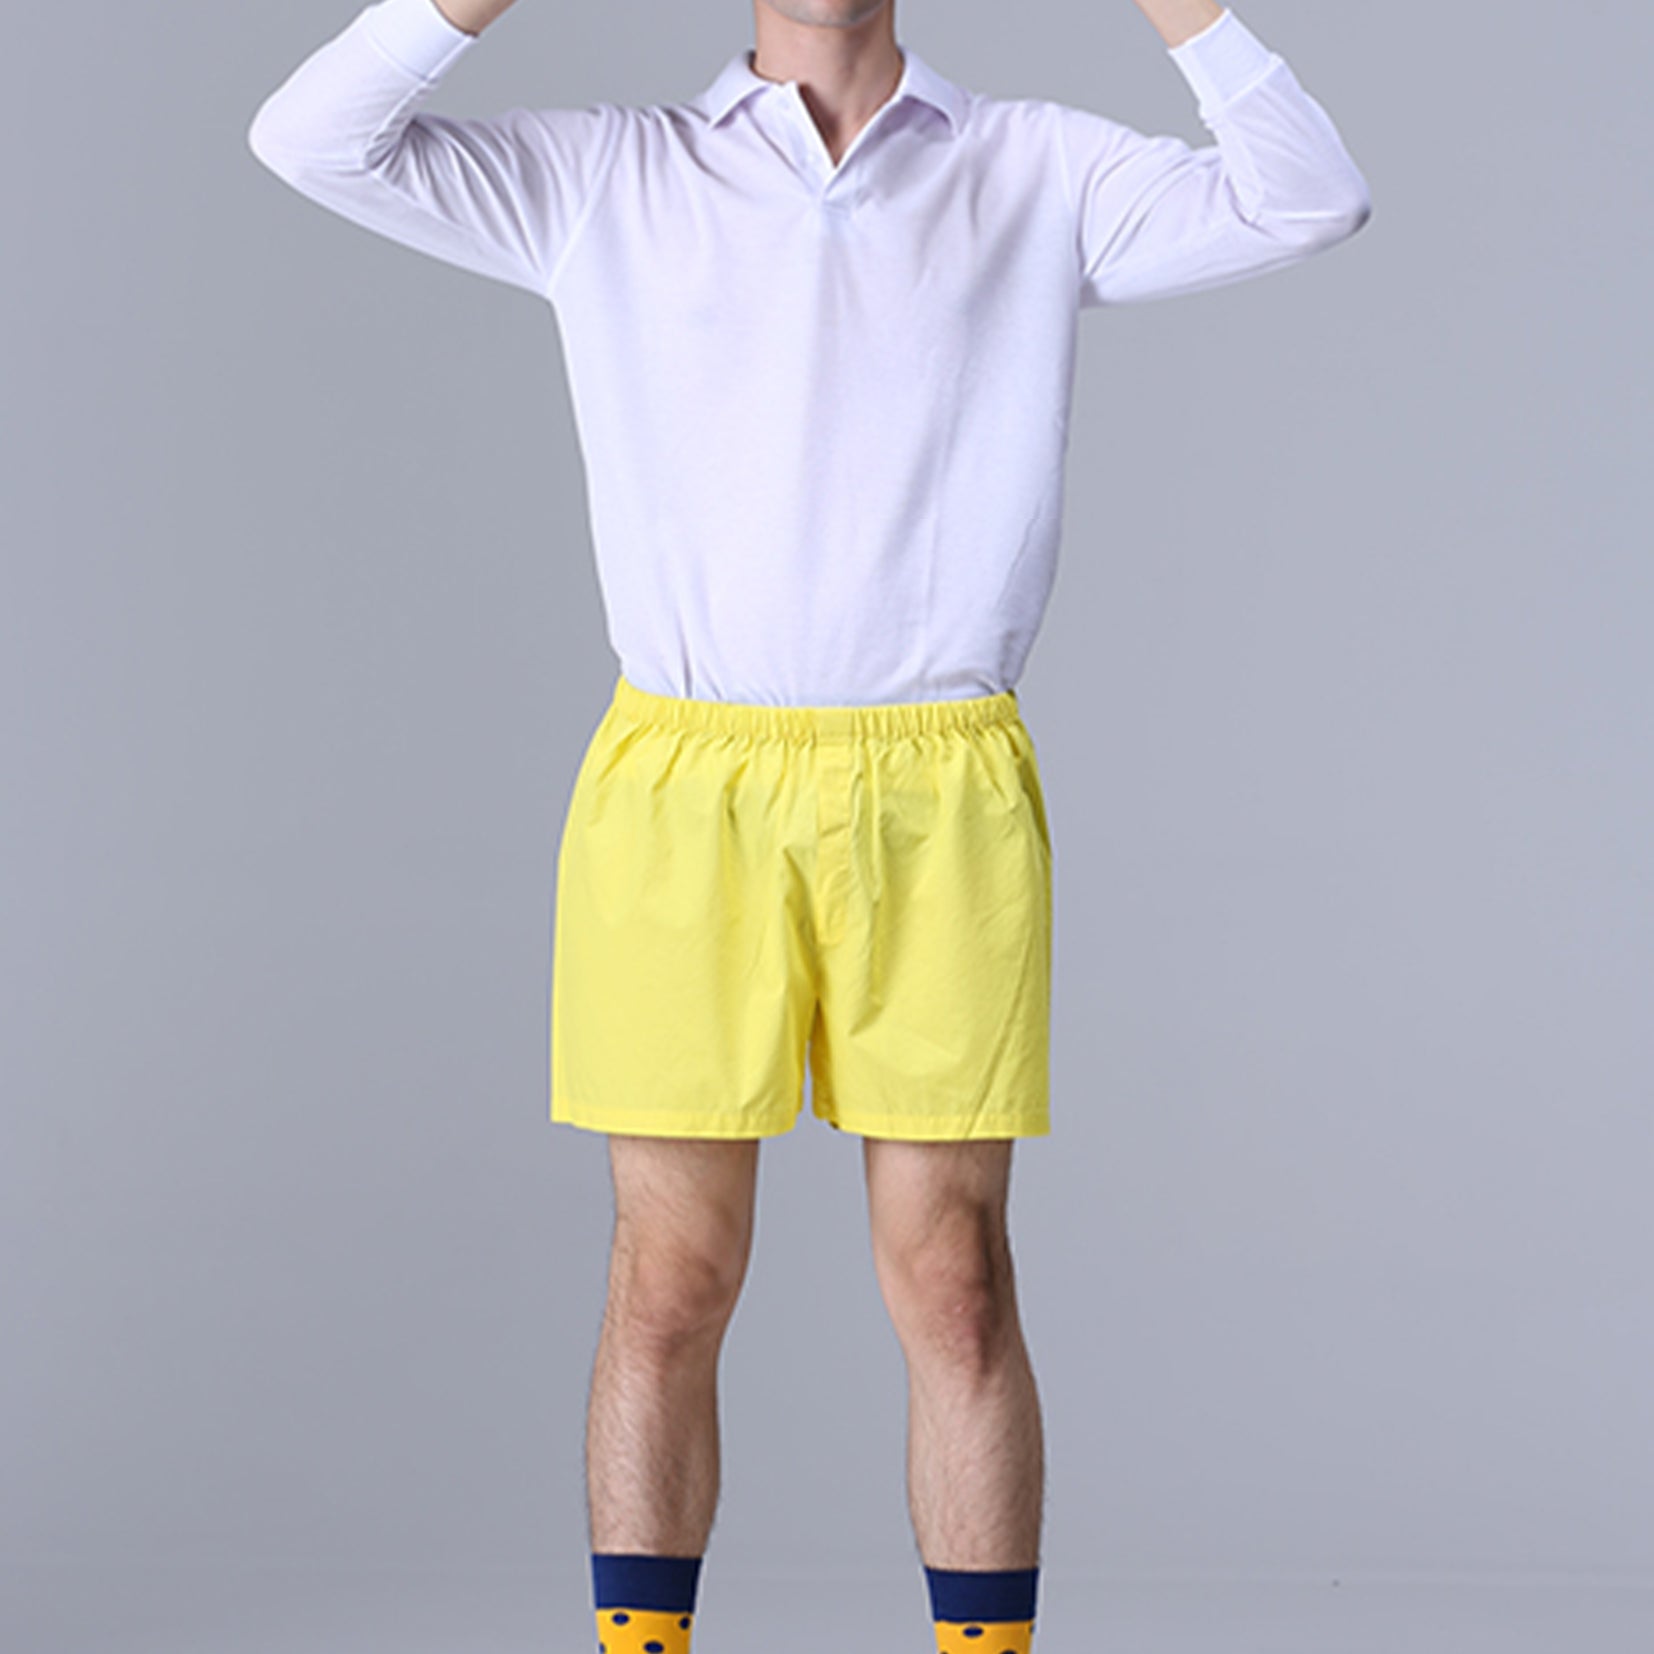 Unisex boxer shorts underwear in yellow